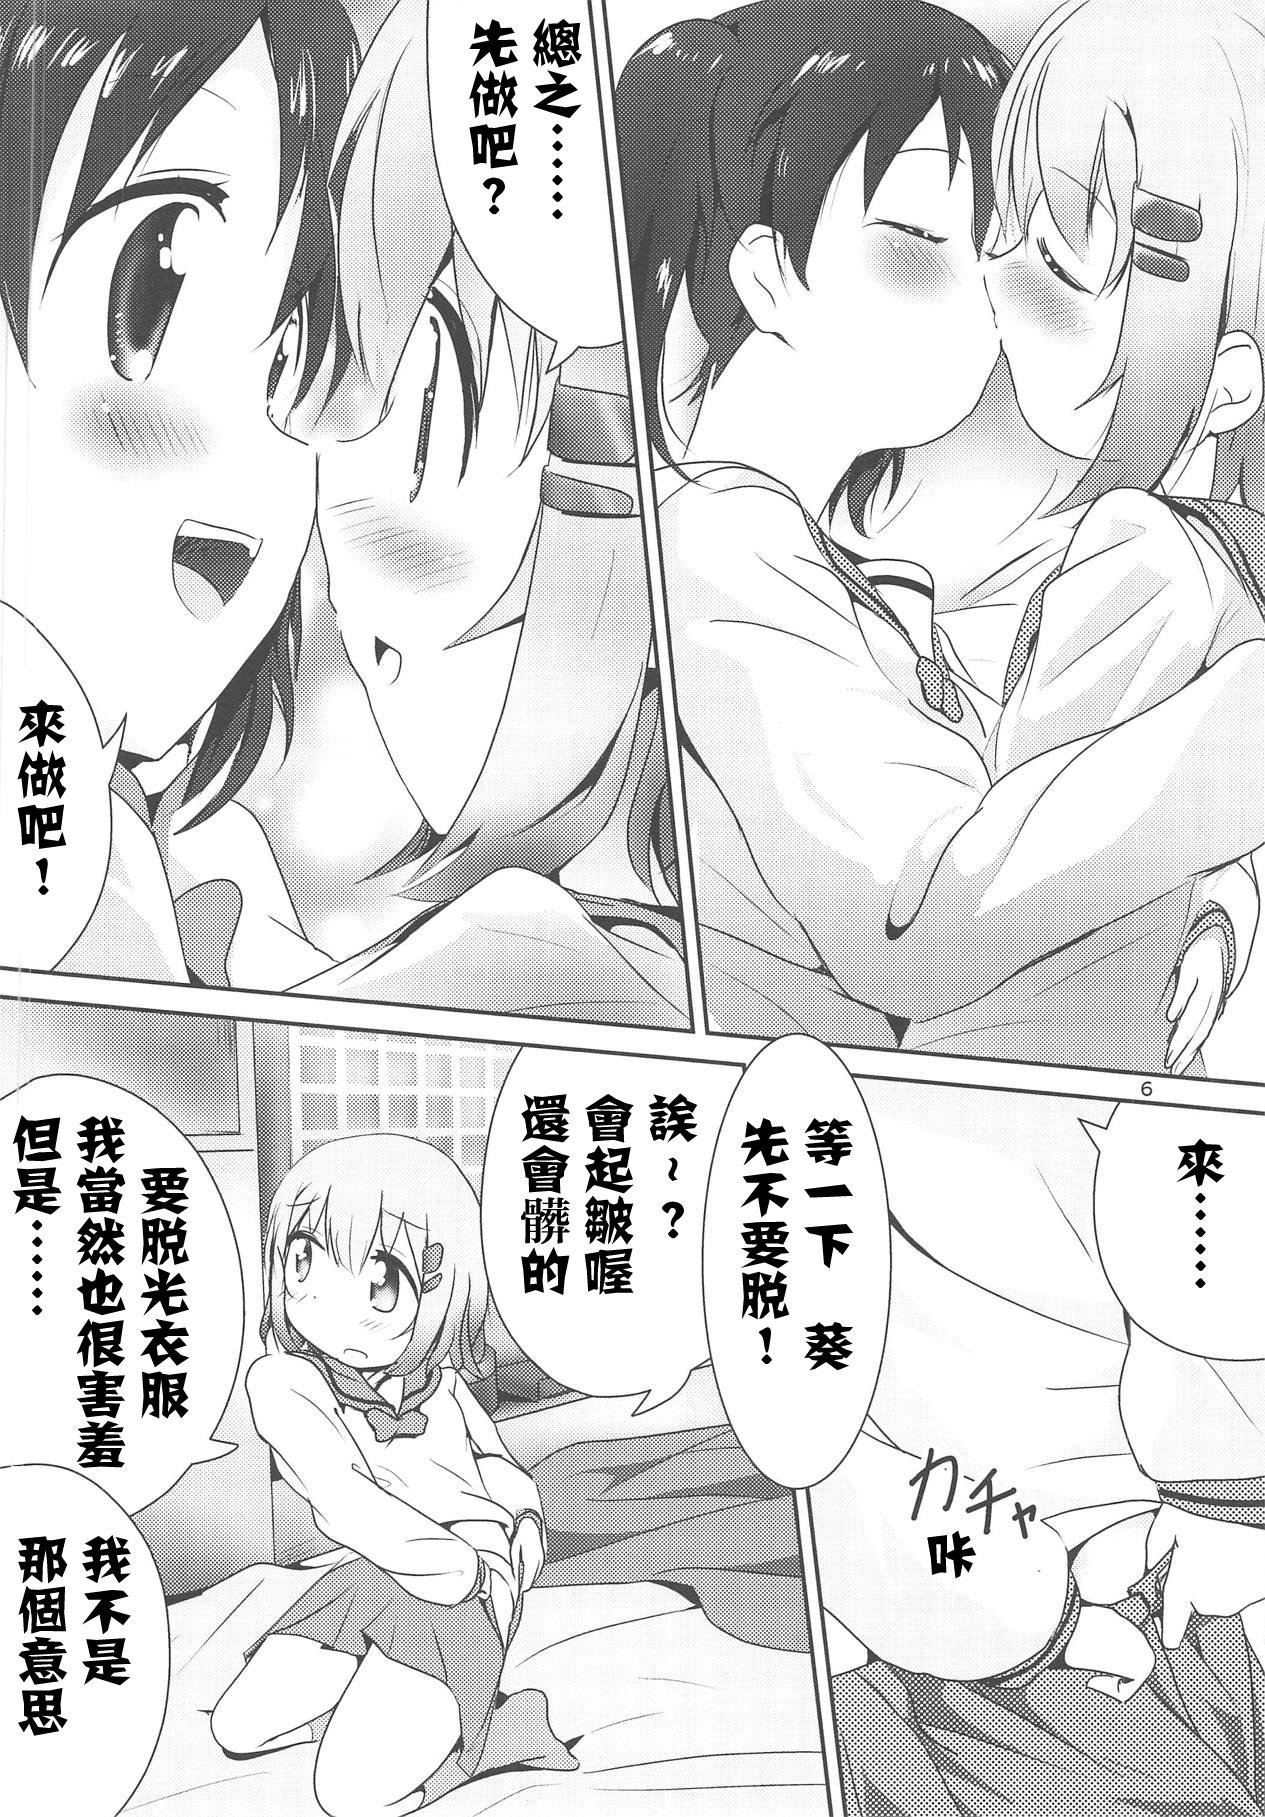 Ball Licking AoHina Yurix - Yama no susume Story - Page 7